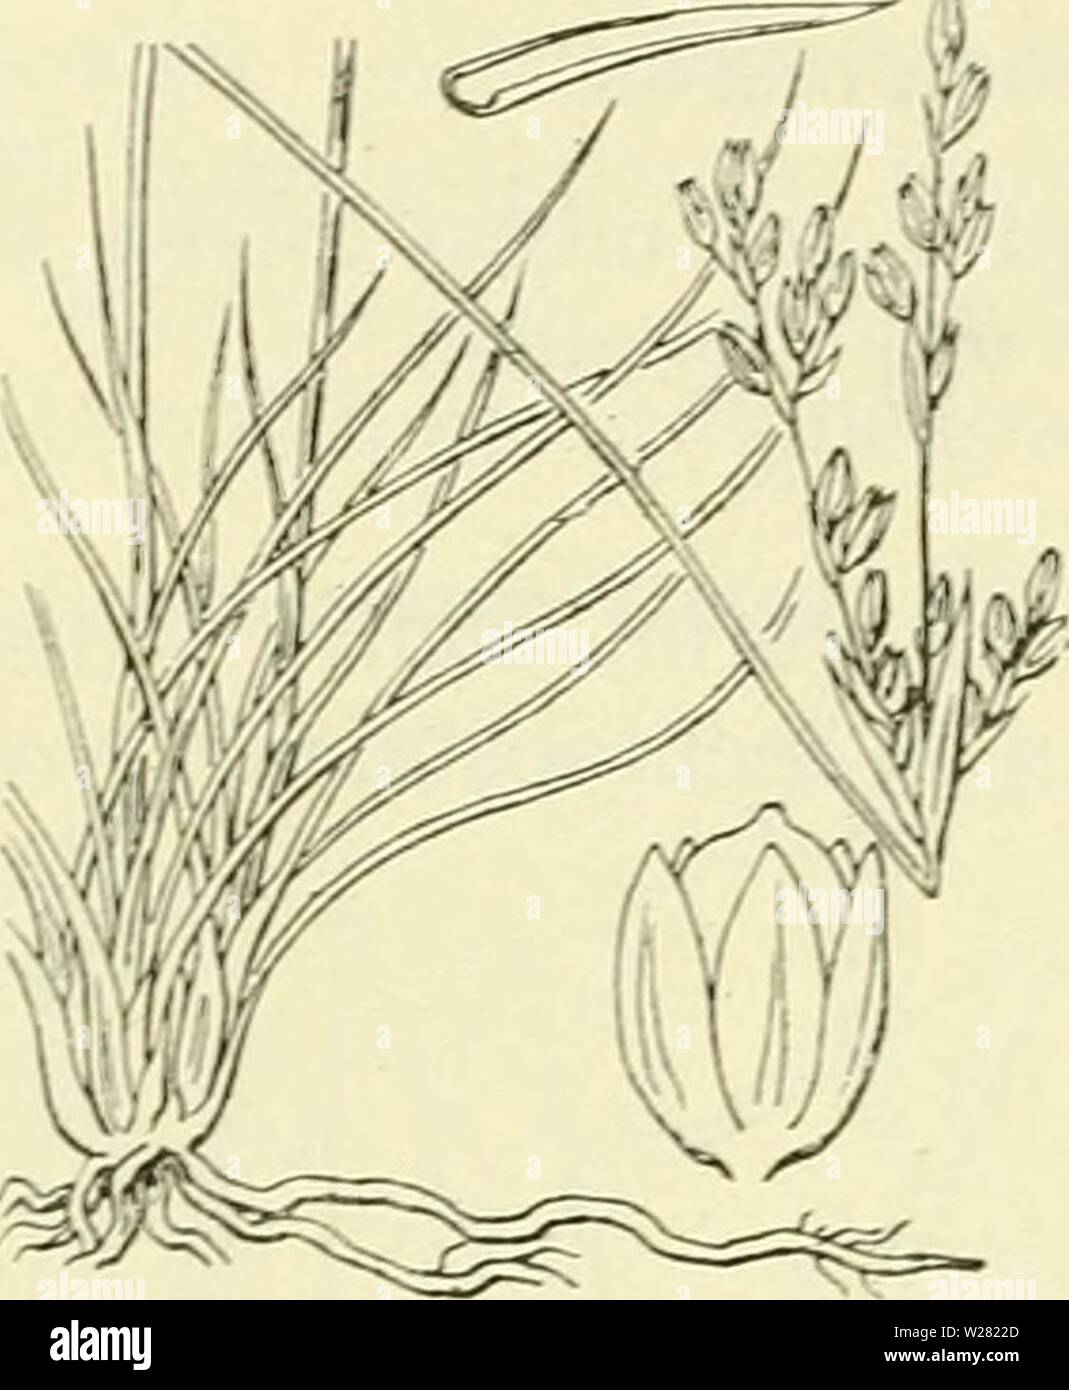 Archive image from page 343 of De flora van Nederland (1909-11). De flora van Nederland  defloravannederl01heuk Year: 1909-11.  302 JUNCACEAE. — FAMILIE 12.    Juncus squarrosus Fig. 212. samengedrukt, aan de eene zijde gewelfd, veel langer dan de wortelbladen. De bladen hebben een tamelijk wijde, geoorde scheede en een smalle, borstelvormige, stijve, afstaande, iets geel- of bruingroene schijf. De bloeiwijze is meest een samengestelde speer, 3-10 cM lang. Het onderste schutblad is meest bladachtig, korter dan de bloeiwijze, de andere schutbladen zijn vliezig. De bloemen staan meest dicht bije Stock Photo